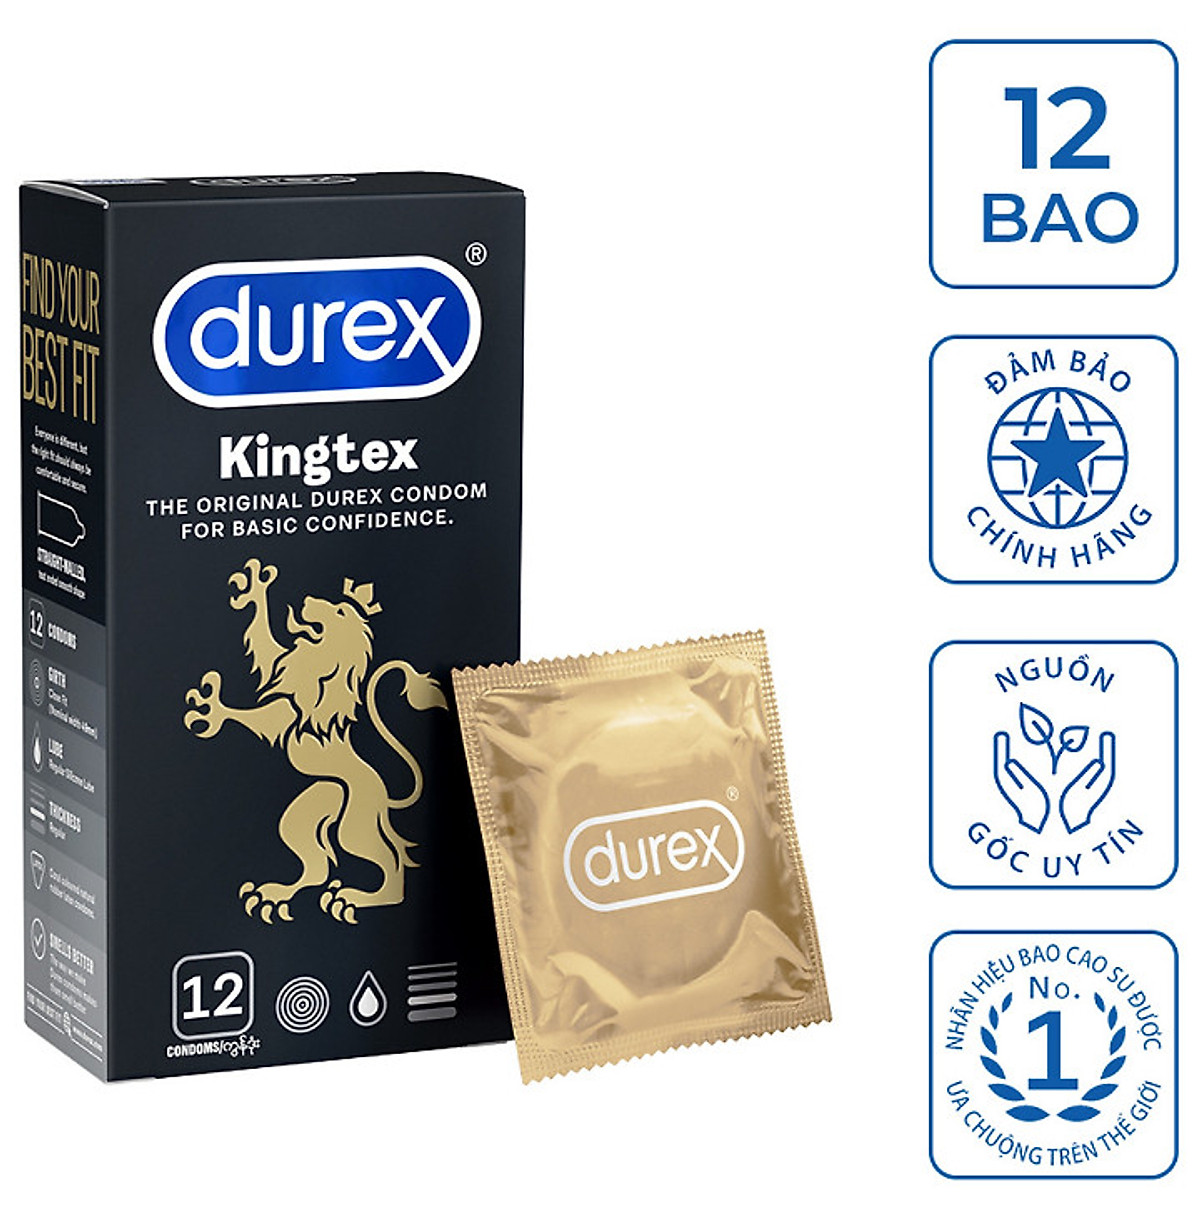 Durex Kingtex cỡ nhỏ 49mm nhập khẩu Thái Lan